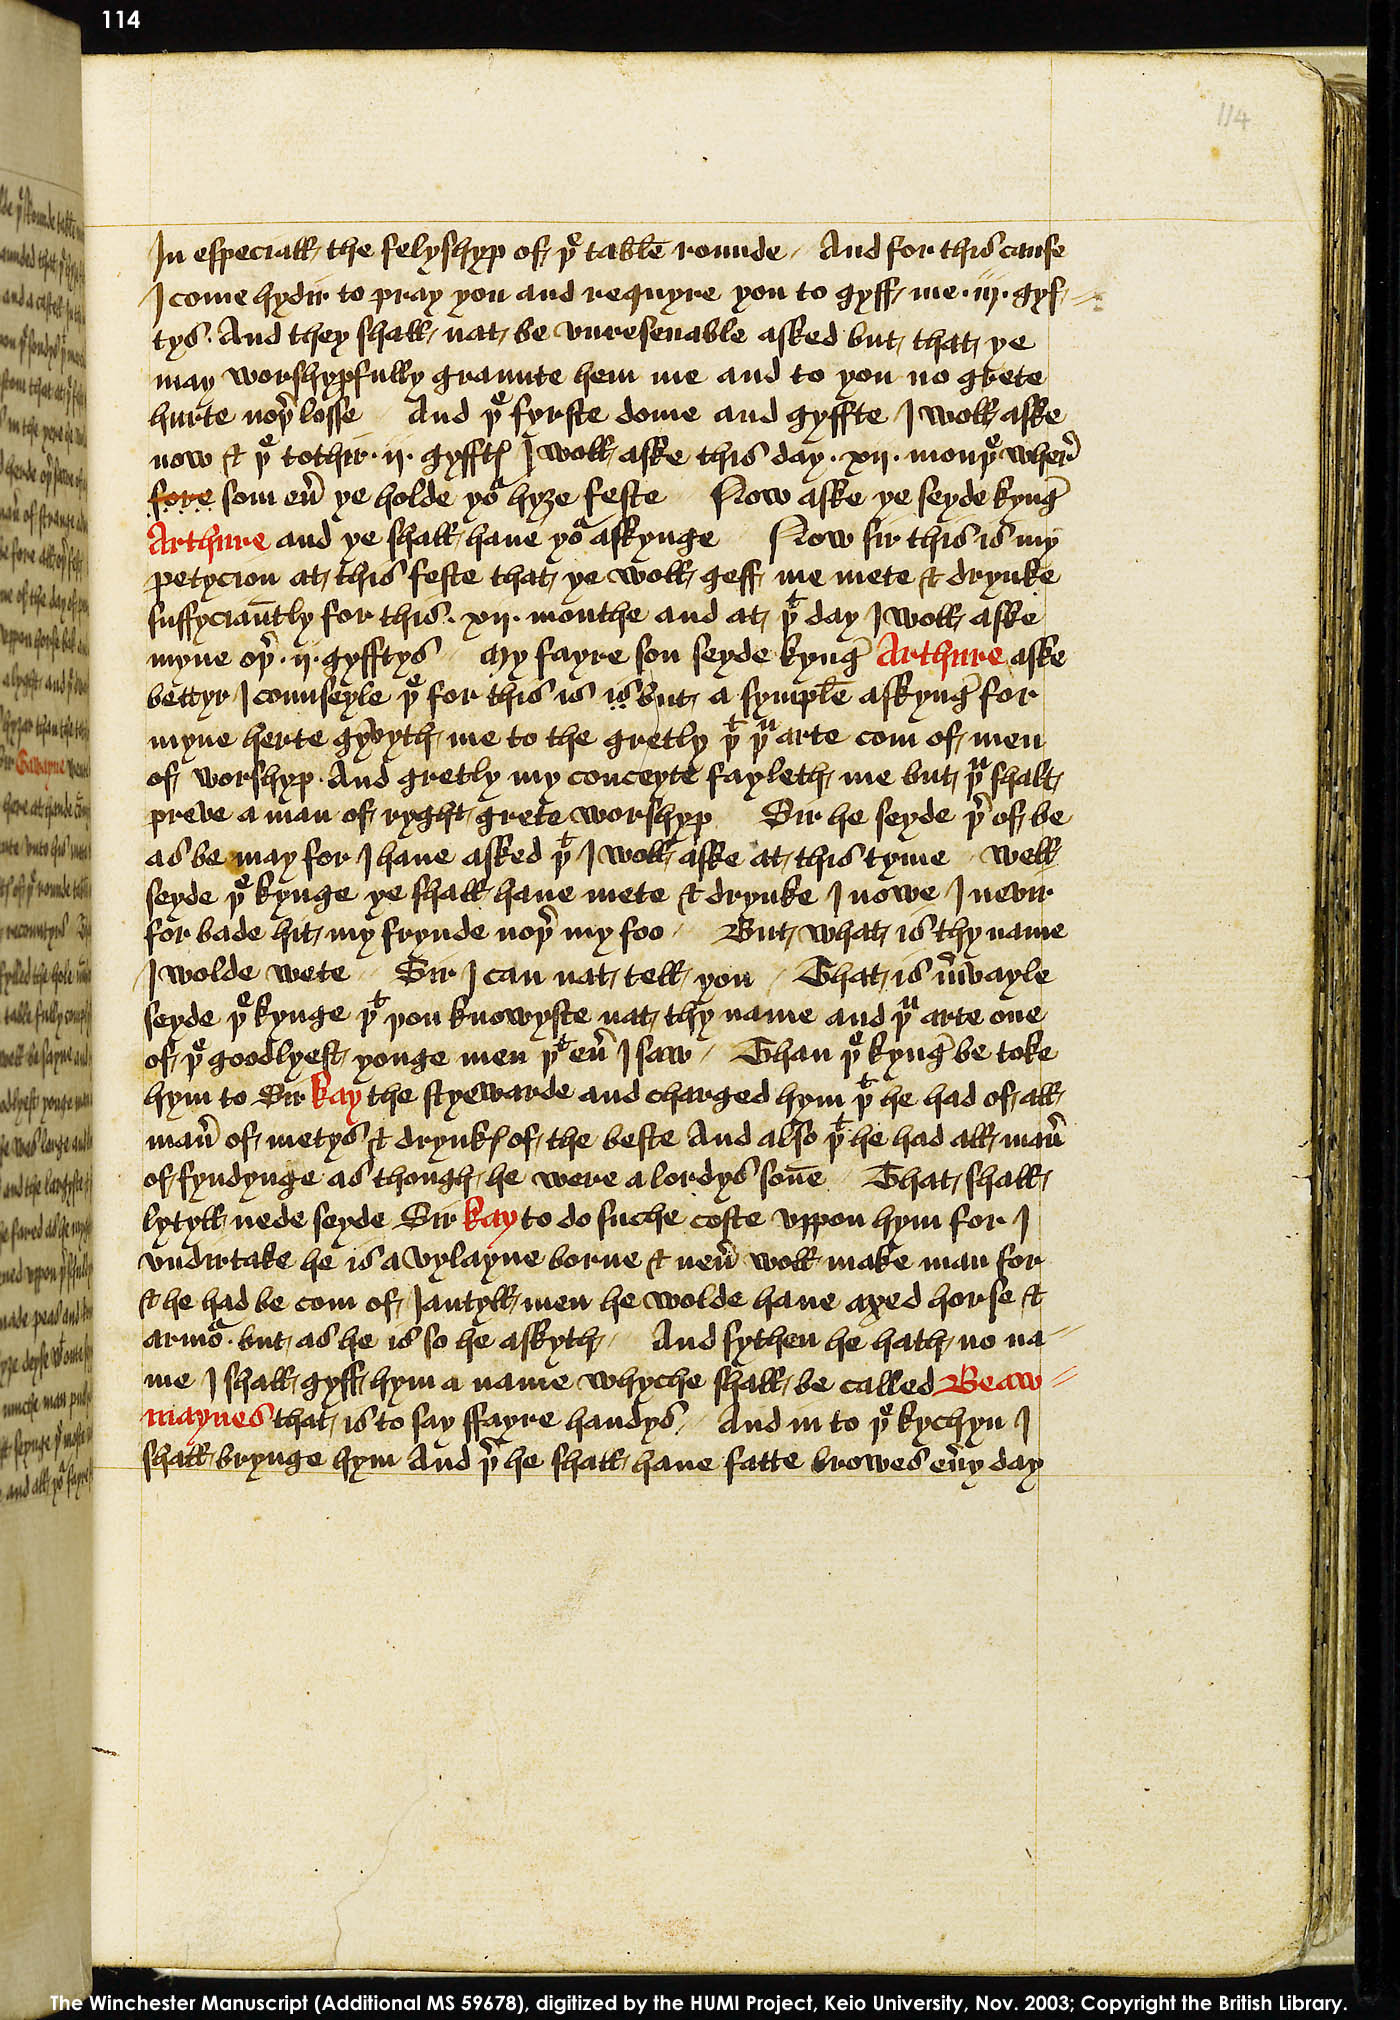 Folio 114r